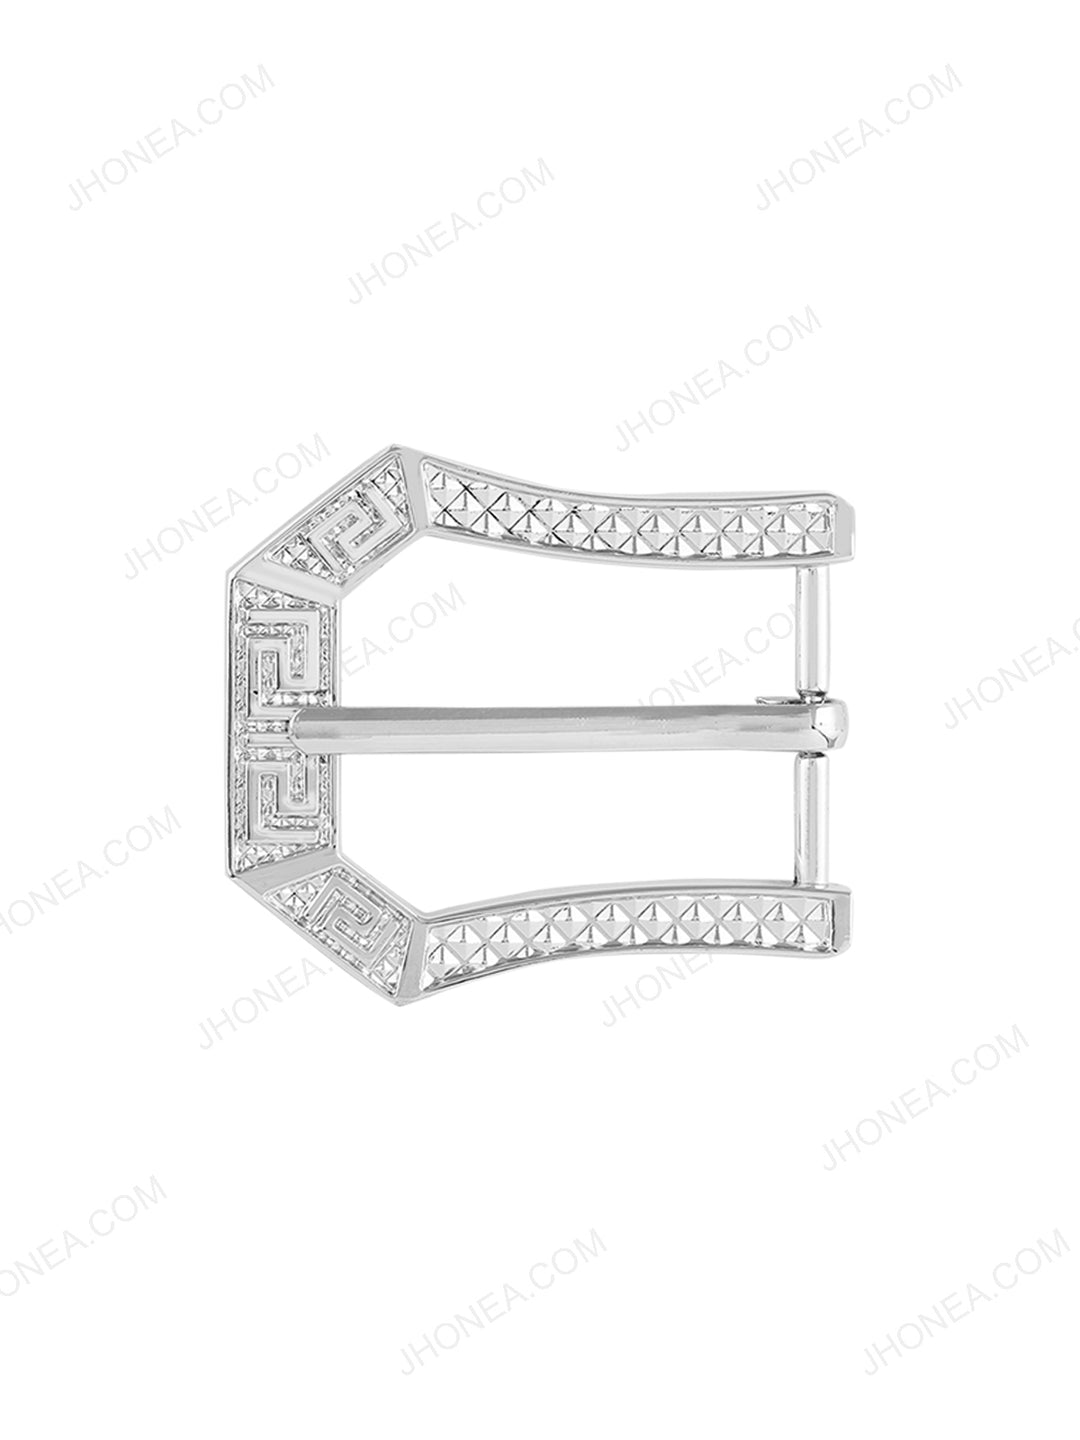 Shiny Engraved Design Fancy Frame Belt Buckle in Shiny Silver Color